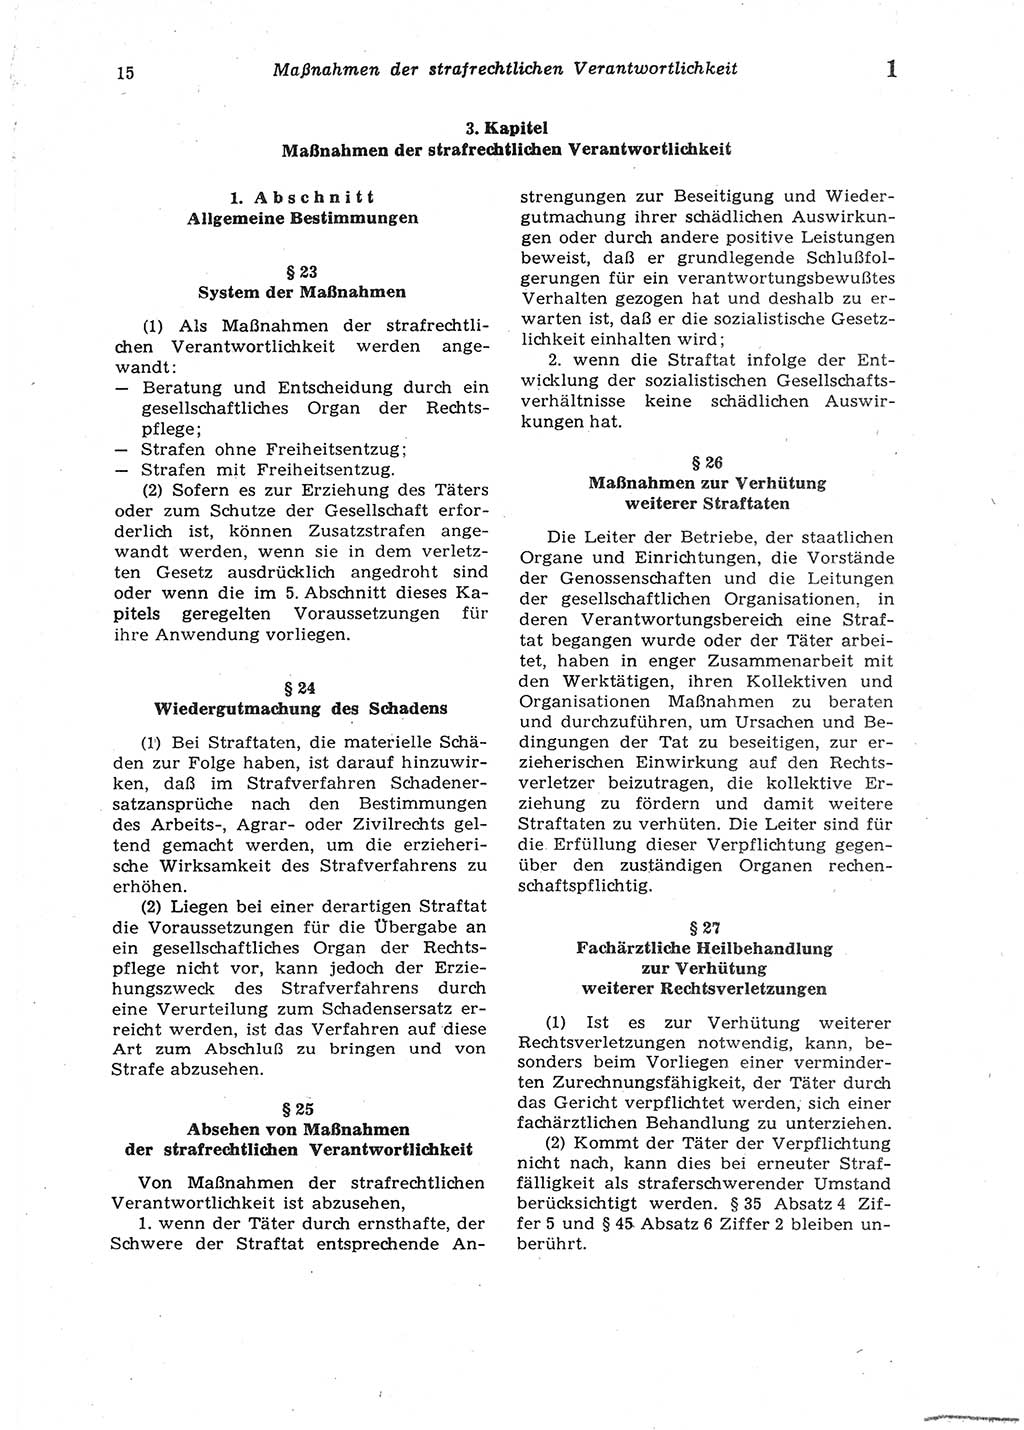 Strafgesetzbuch (StGB) der Deutschen Demokratischen Republik (DDR) 1987, Seite 15 (StGB DDR 1987, S. 15)